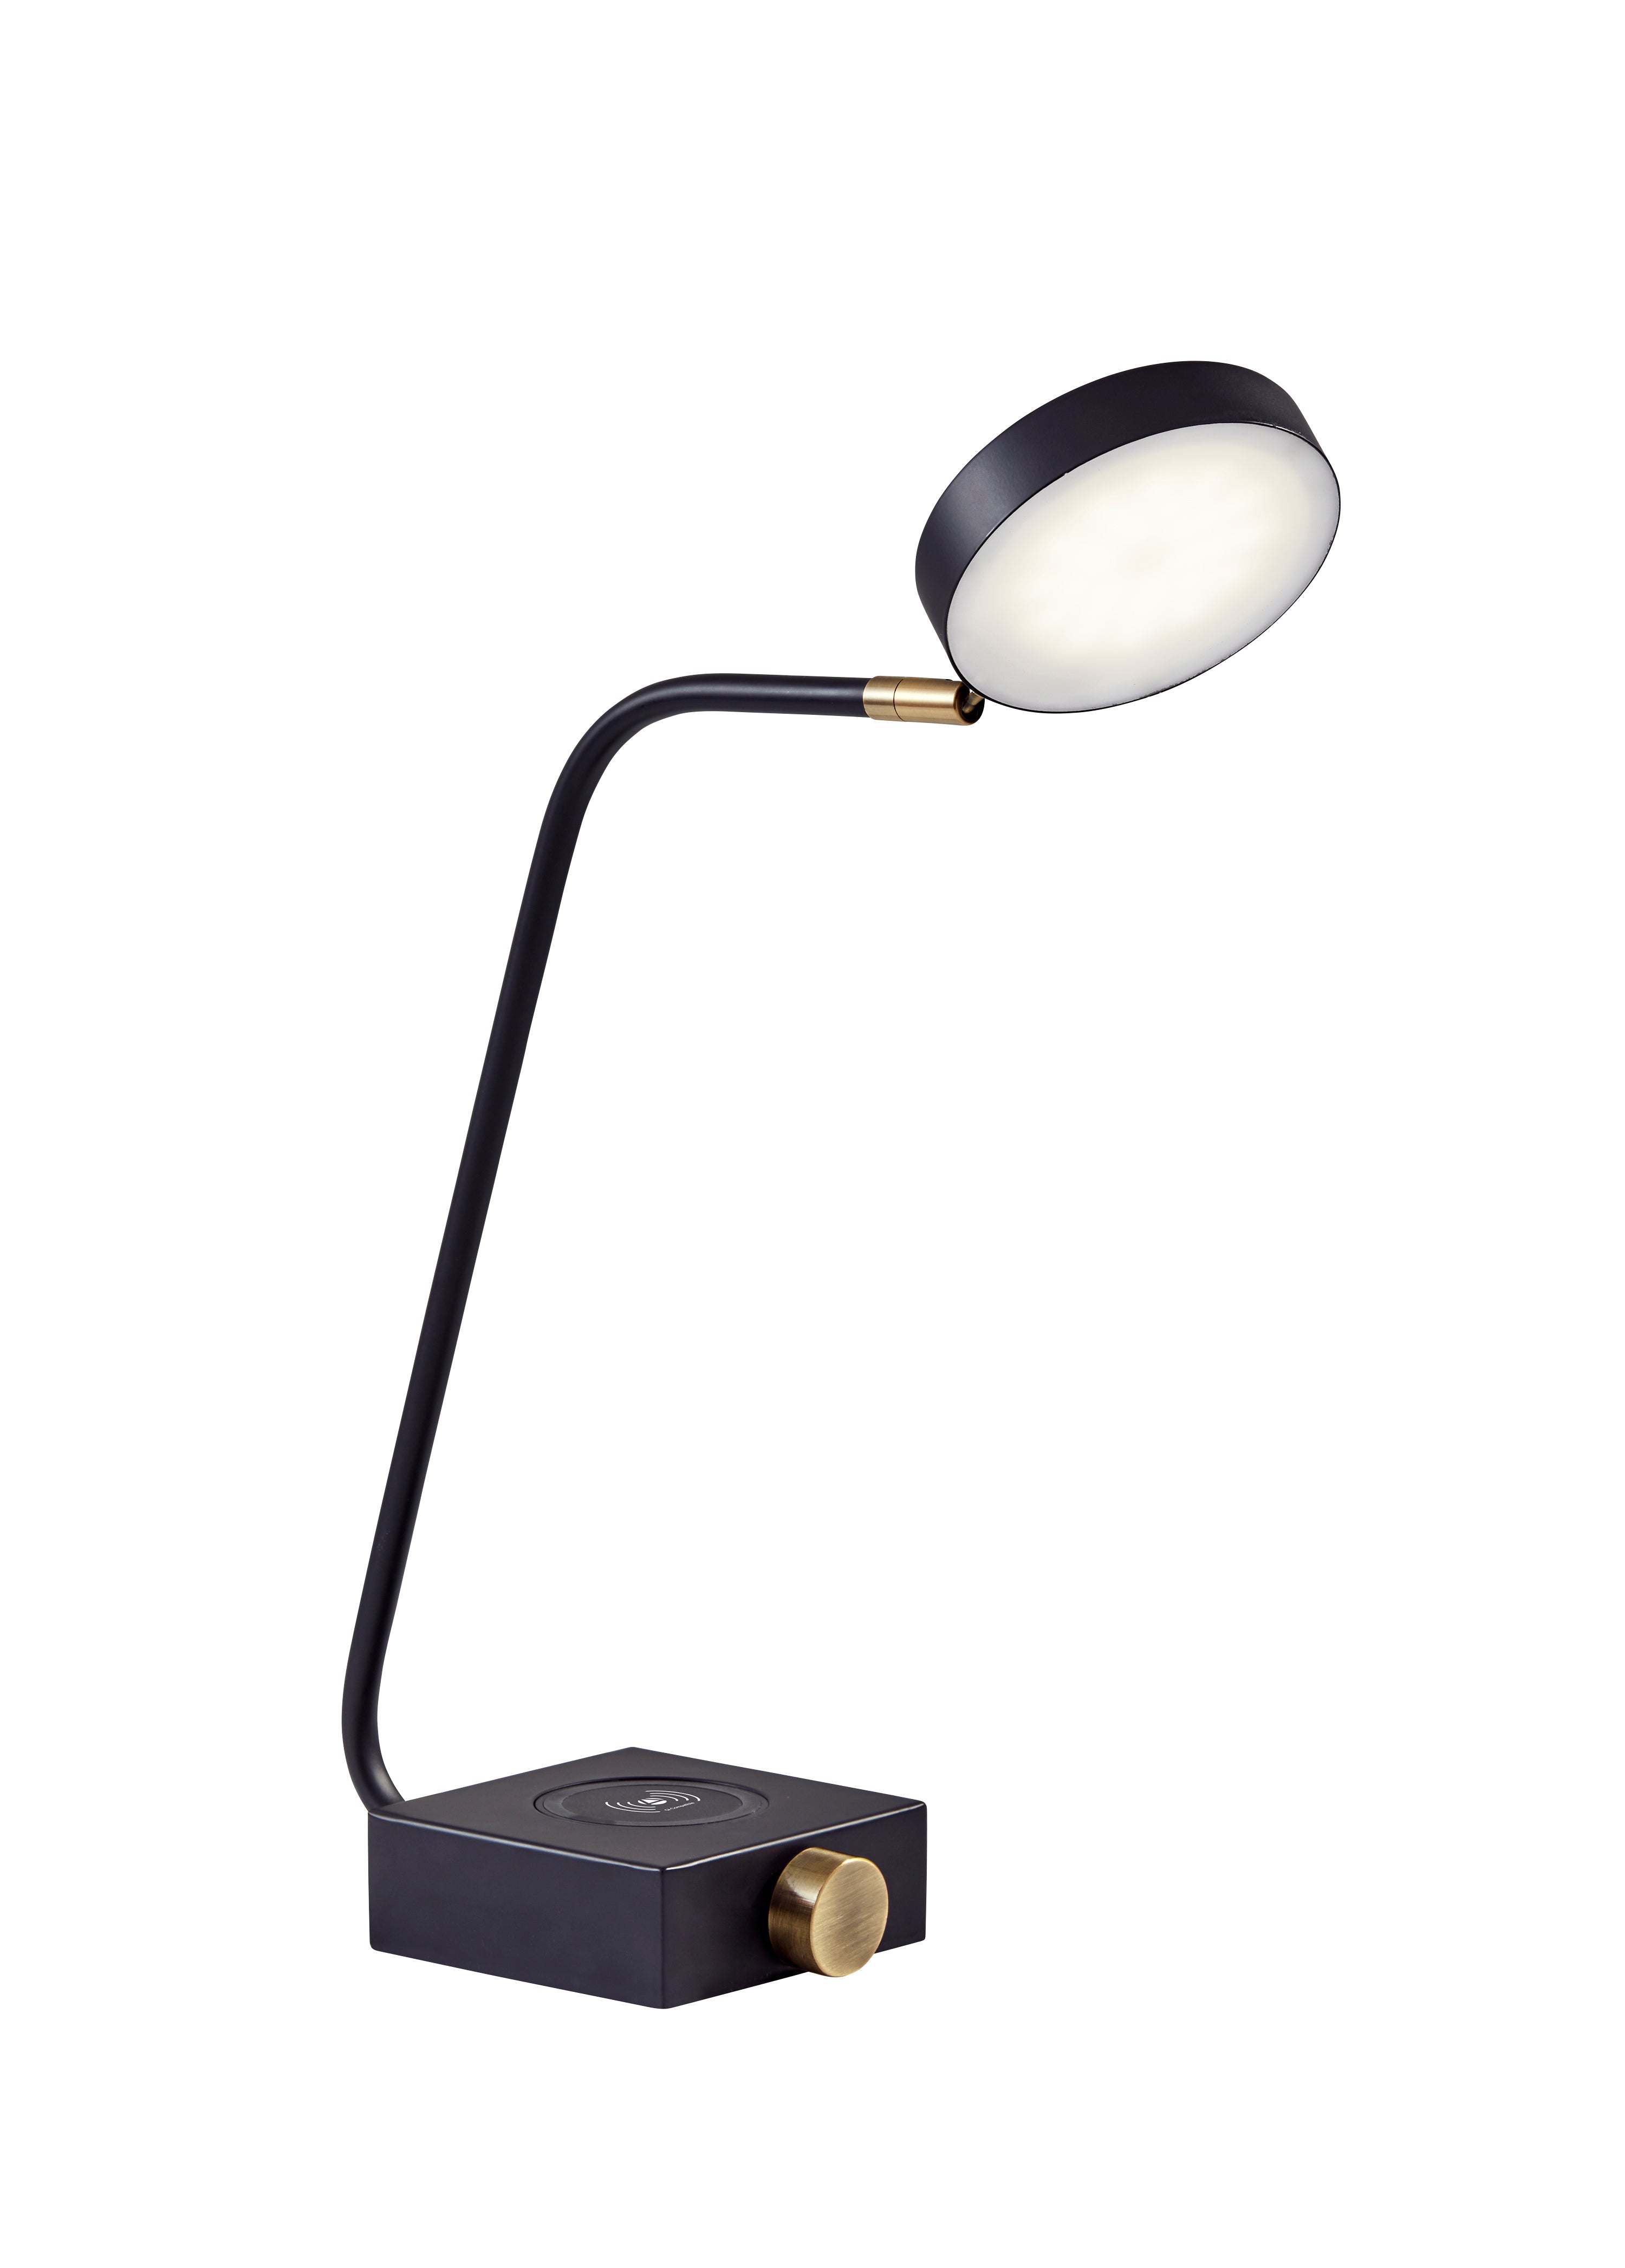 CALDER Lampe sur table Noir, Or DEL INTÉGRÉ - 3618-01 | ADESSO